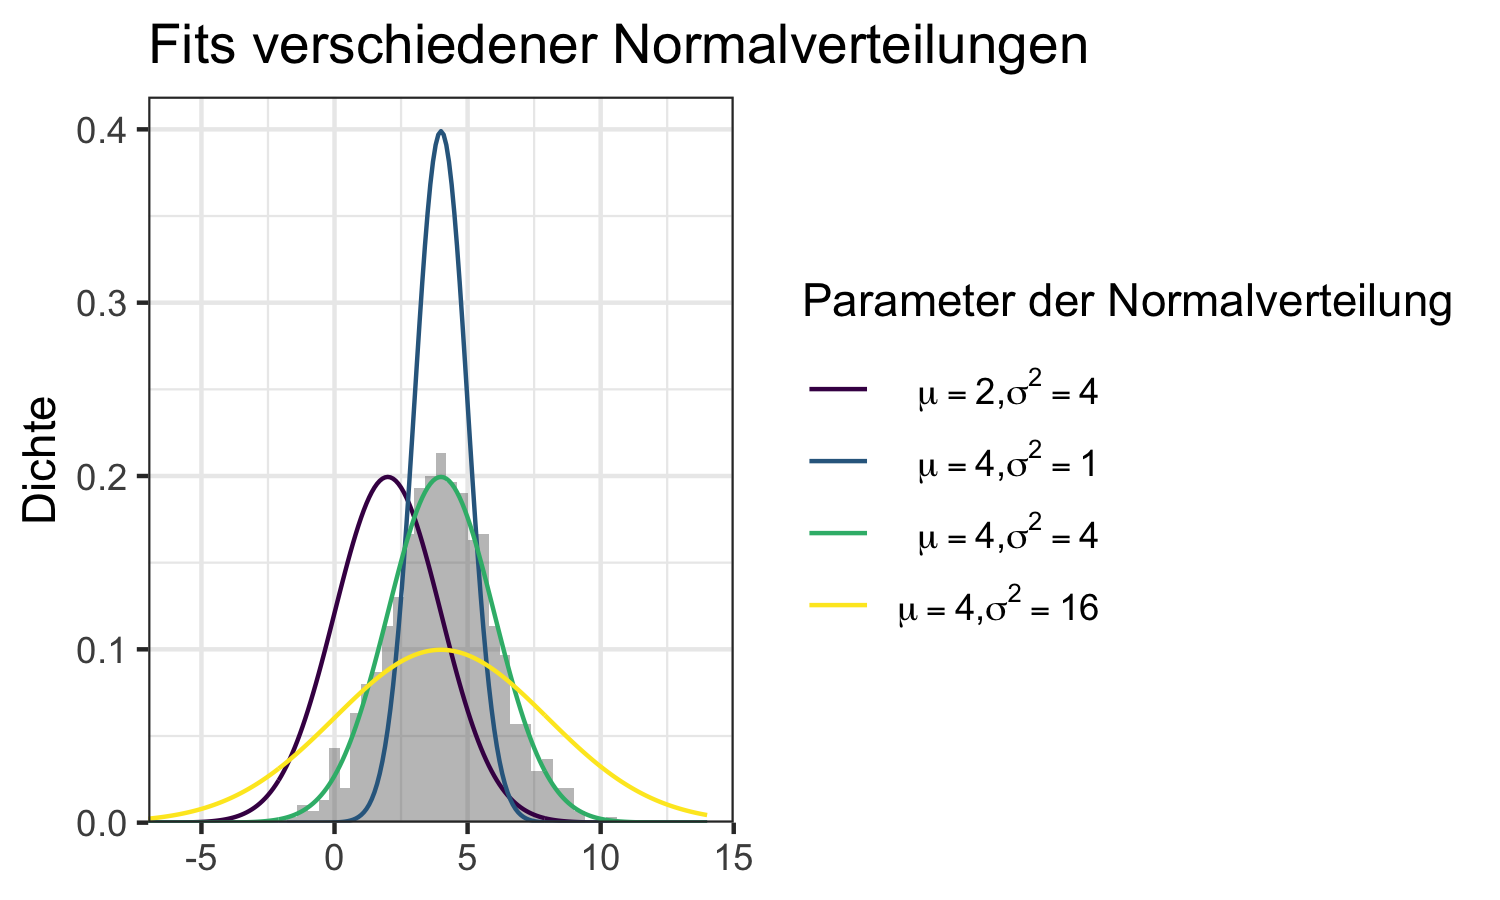 Beispiel zur Verdeutlichung von Fits verschiedener Normalverteilungen mit unterschiedlichen Parameterwerten